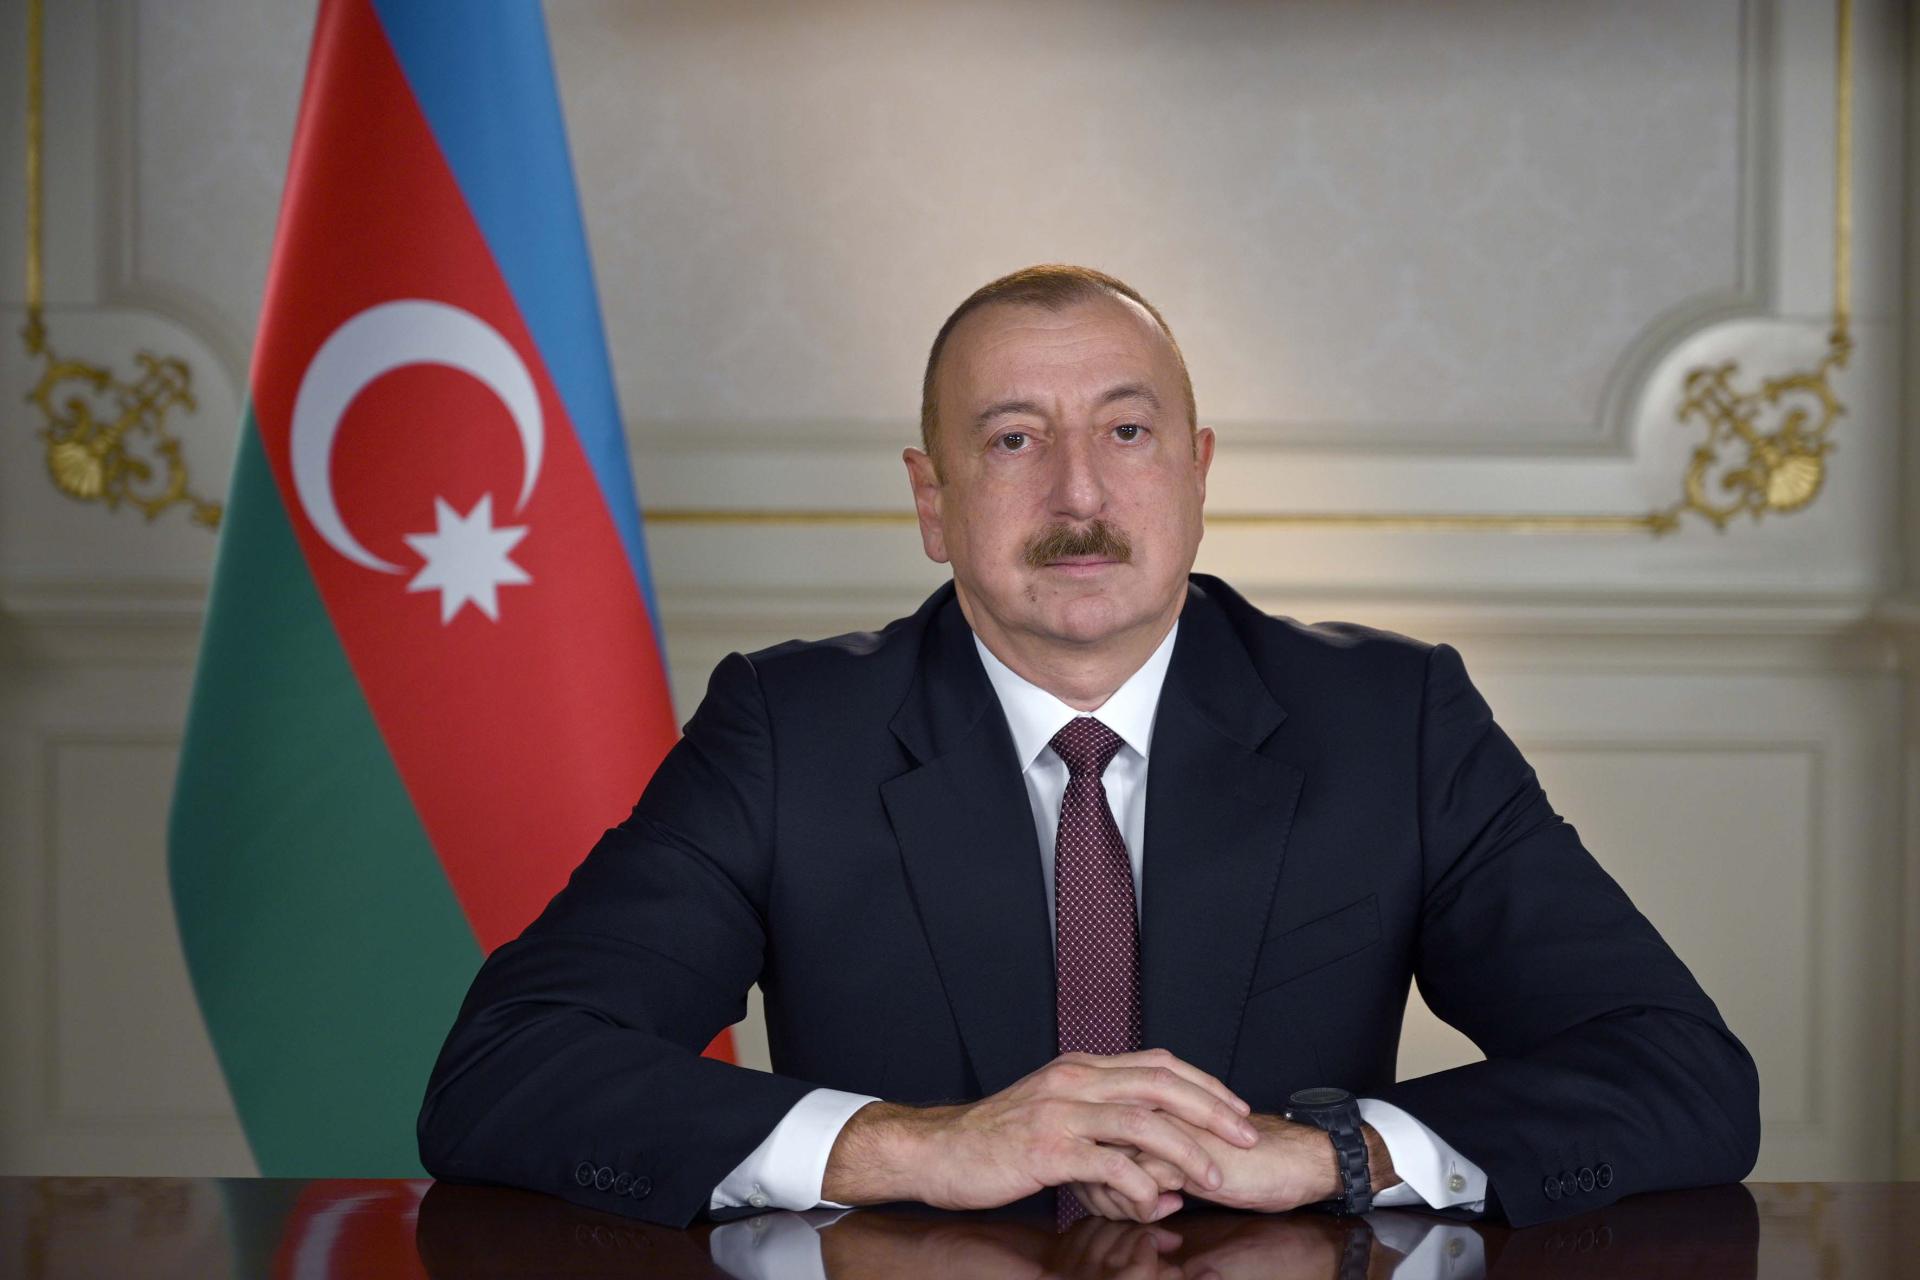 Президент Ильхам Алиев подписал распоряжение об участии азербайджанских спортсменов в Летних Олимпийских играх